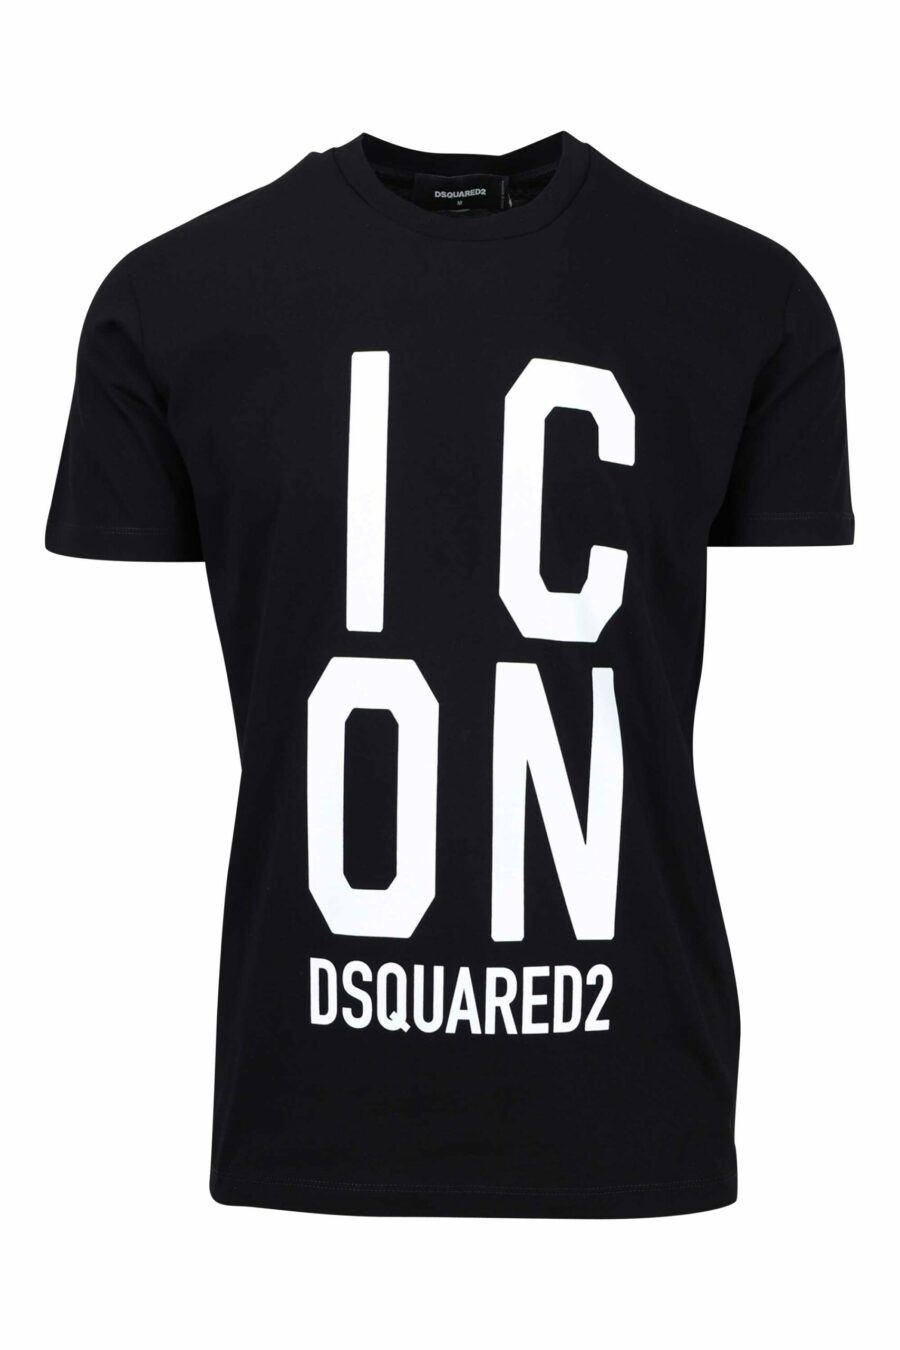 T-shirt preta com maxilogo "ícone" quadrado - 8052134981047 à escala